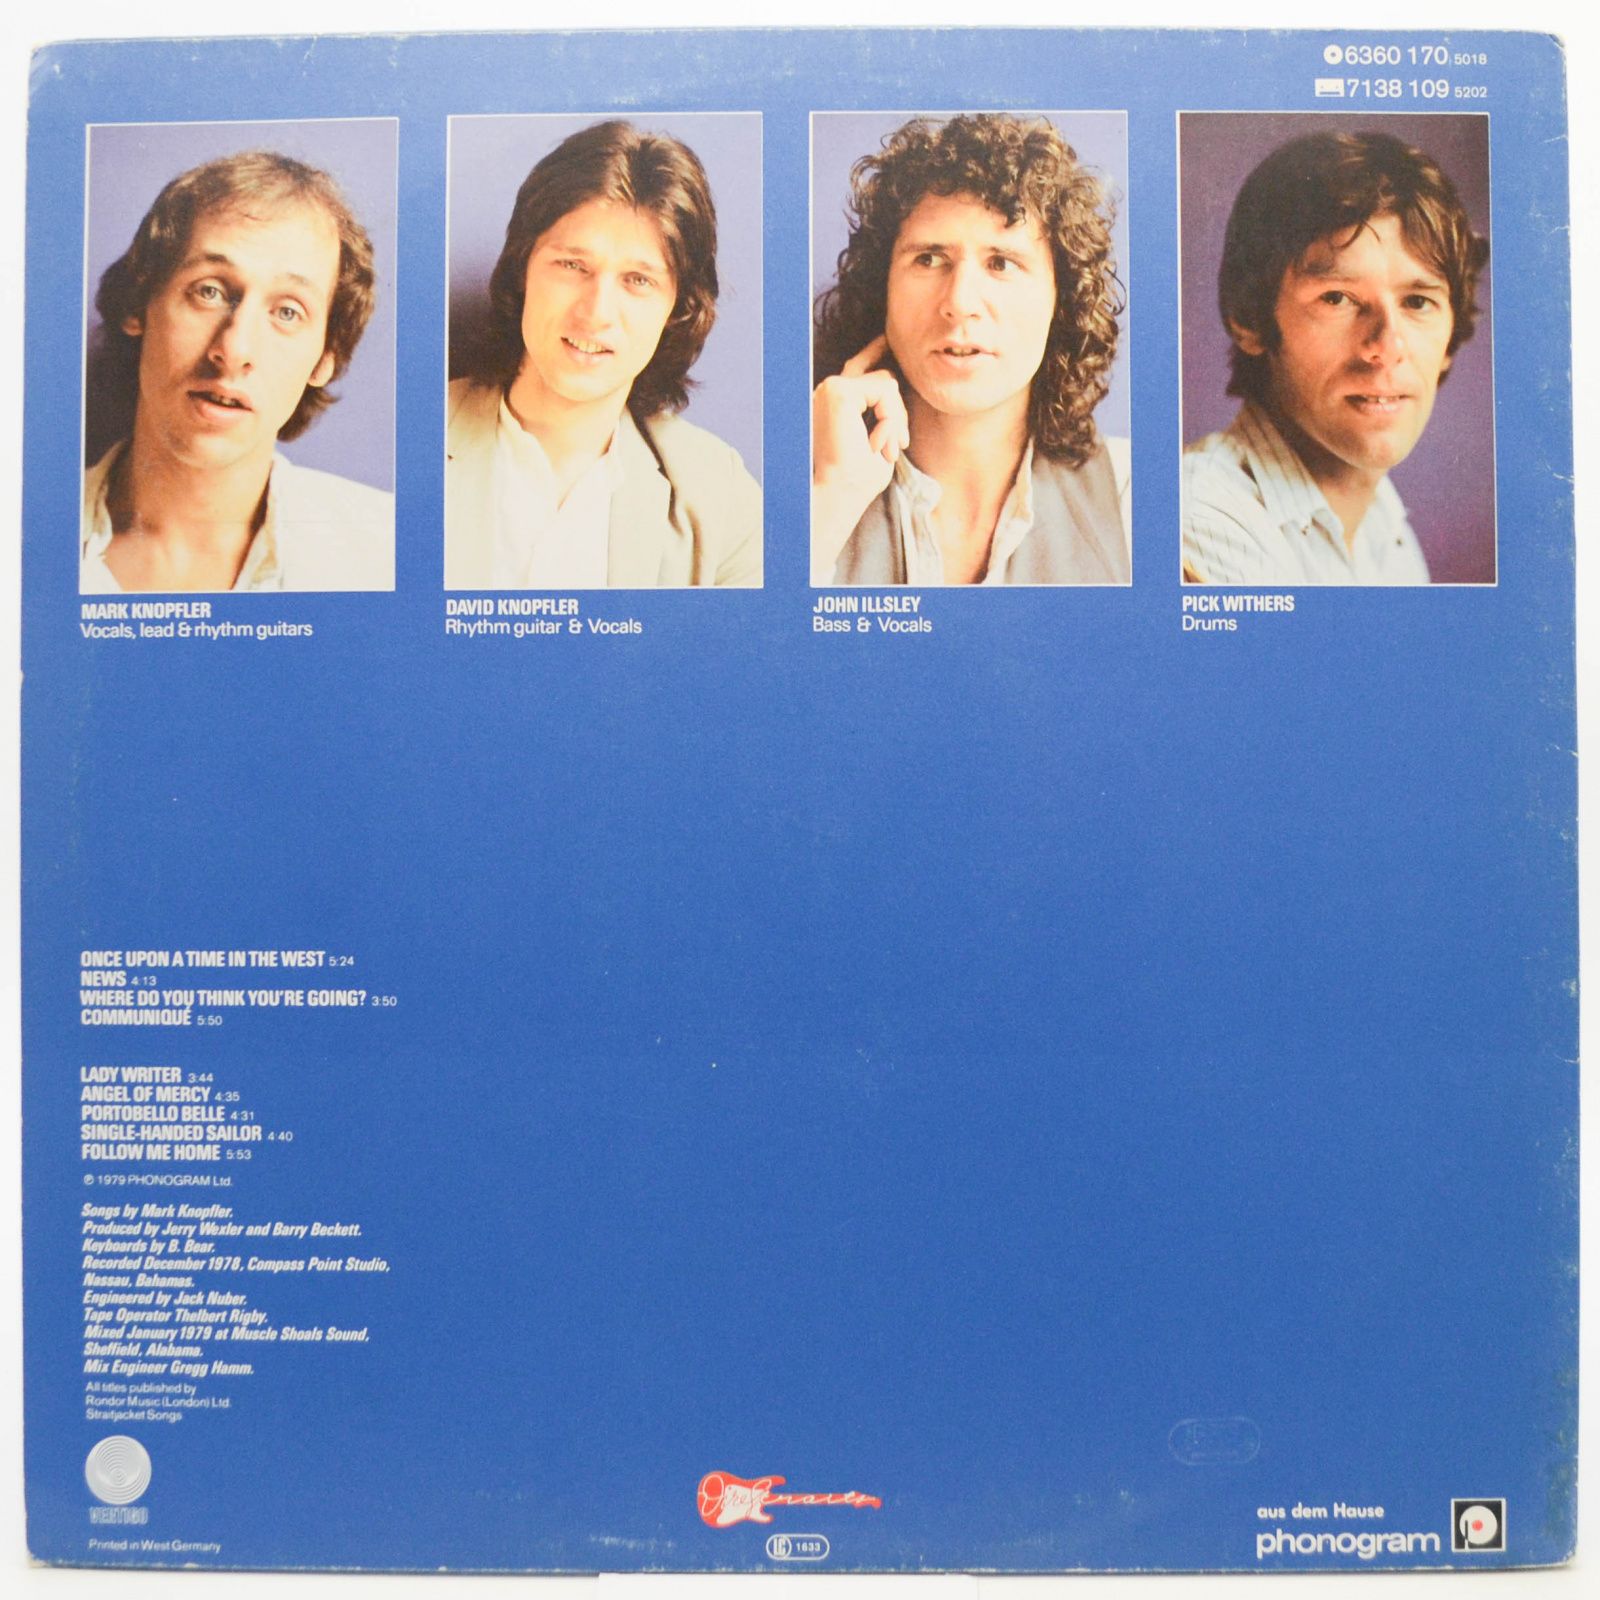 Dire Straits — Communiqué, 1979